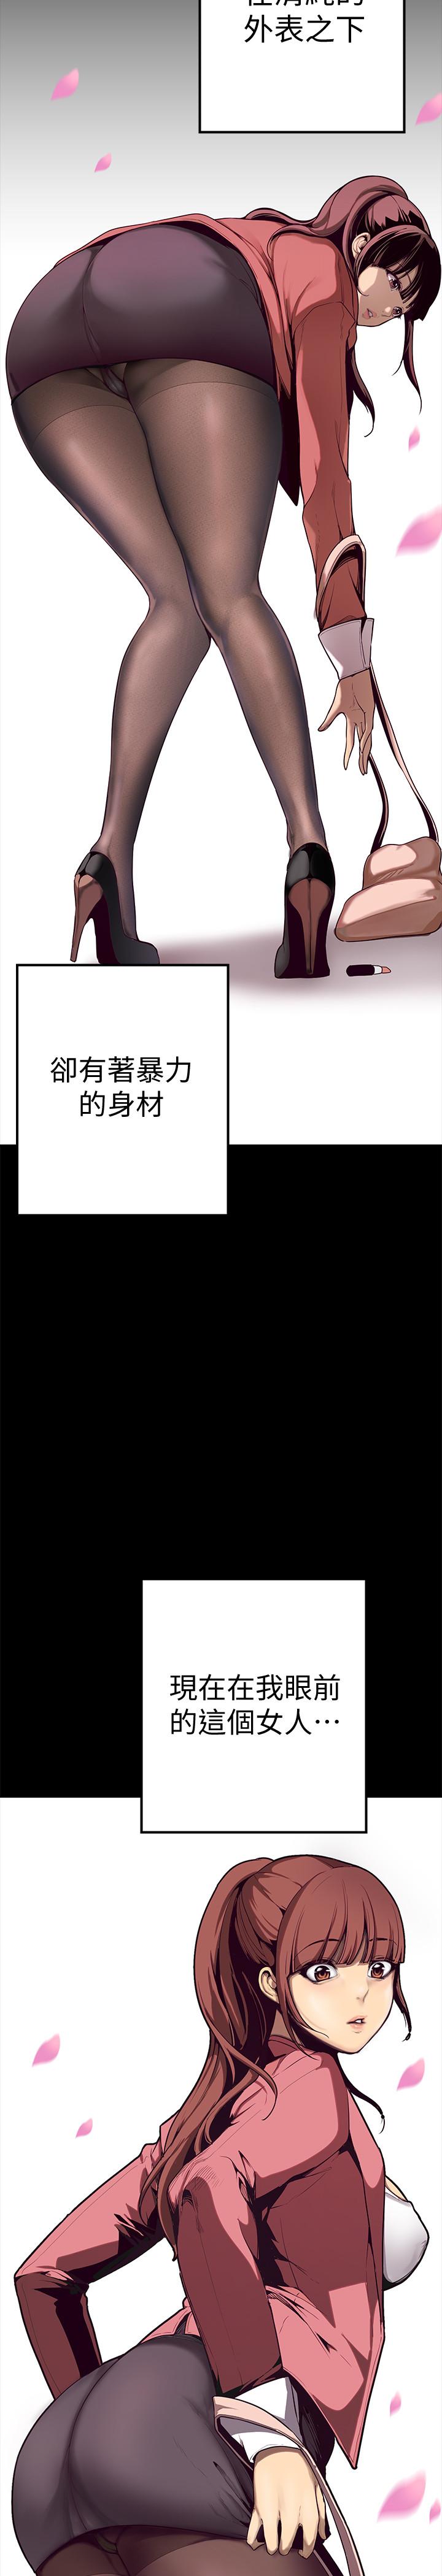 [尹坤志&高孫志]美丽新世界 EP.1(正體中文)高畫質版本 10